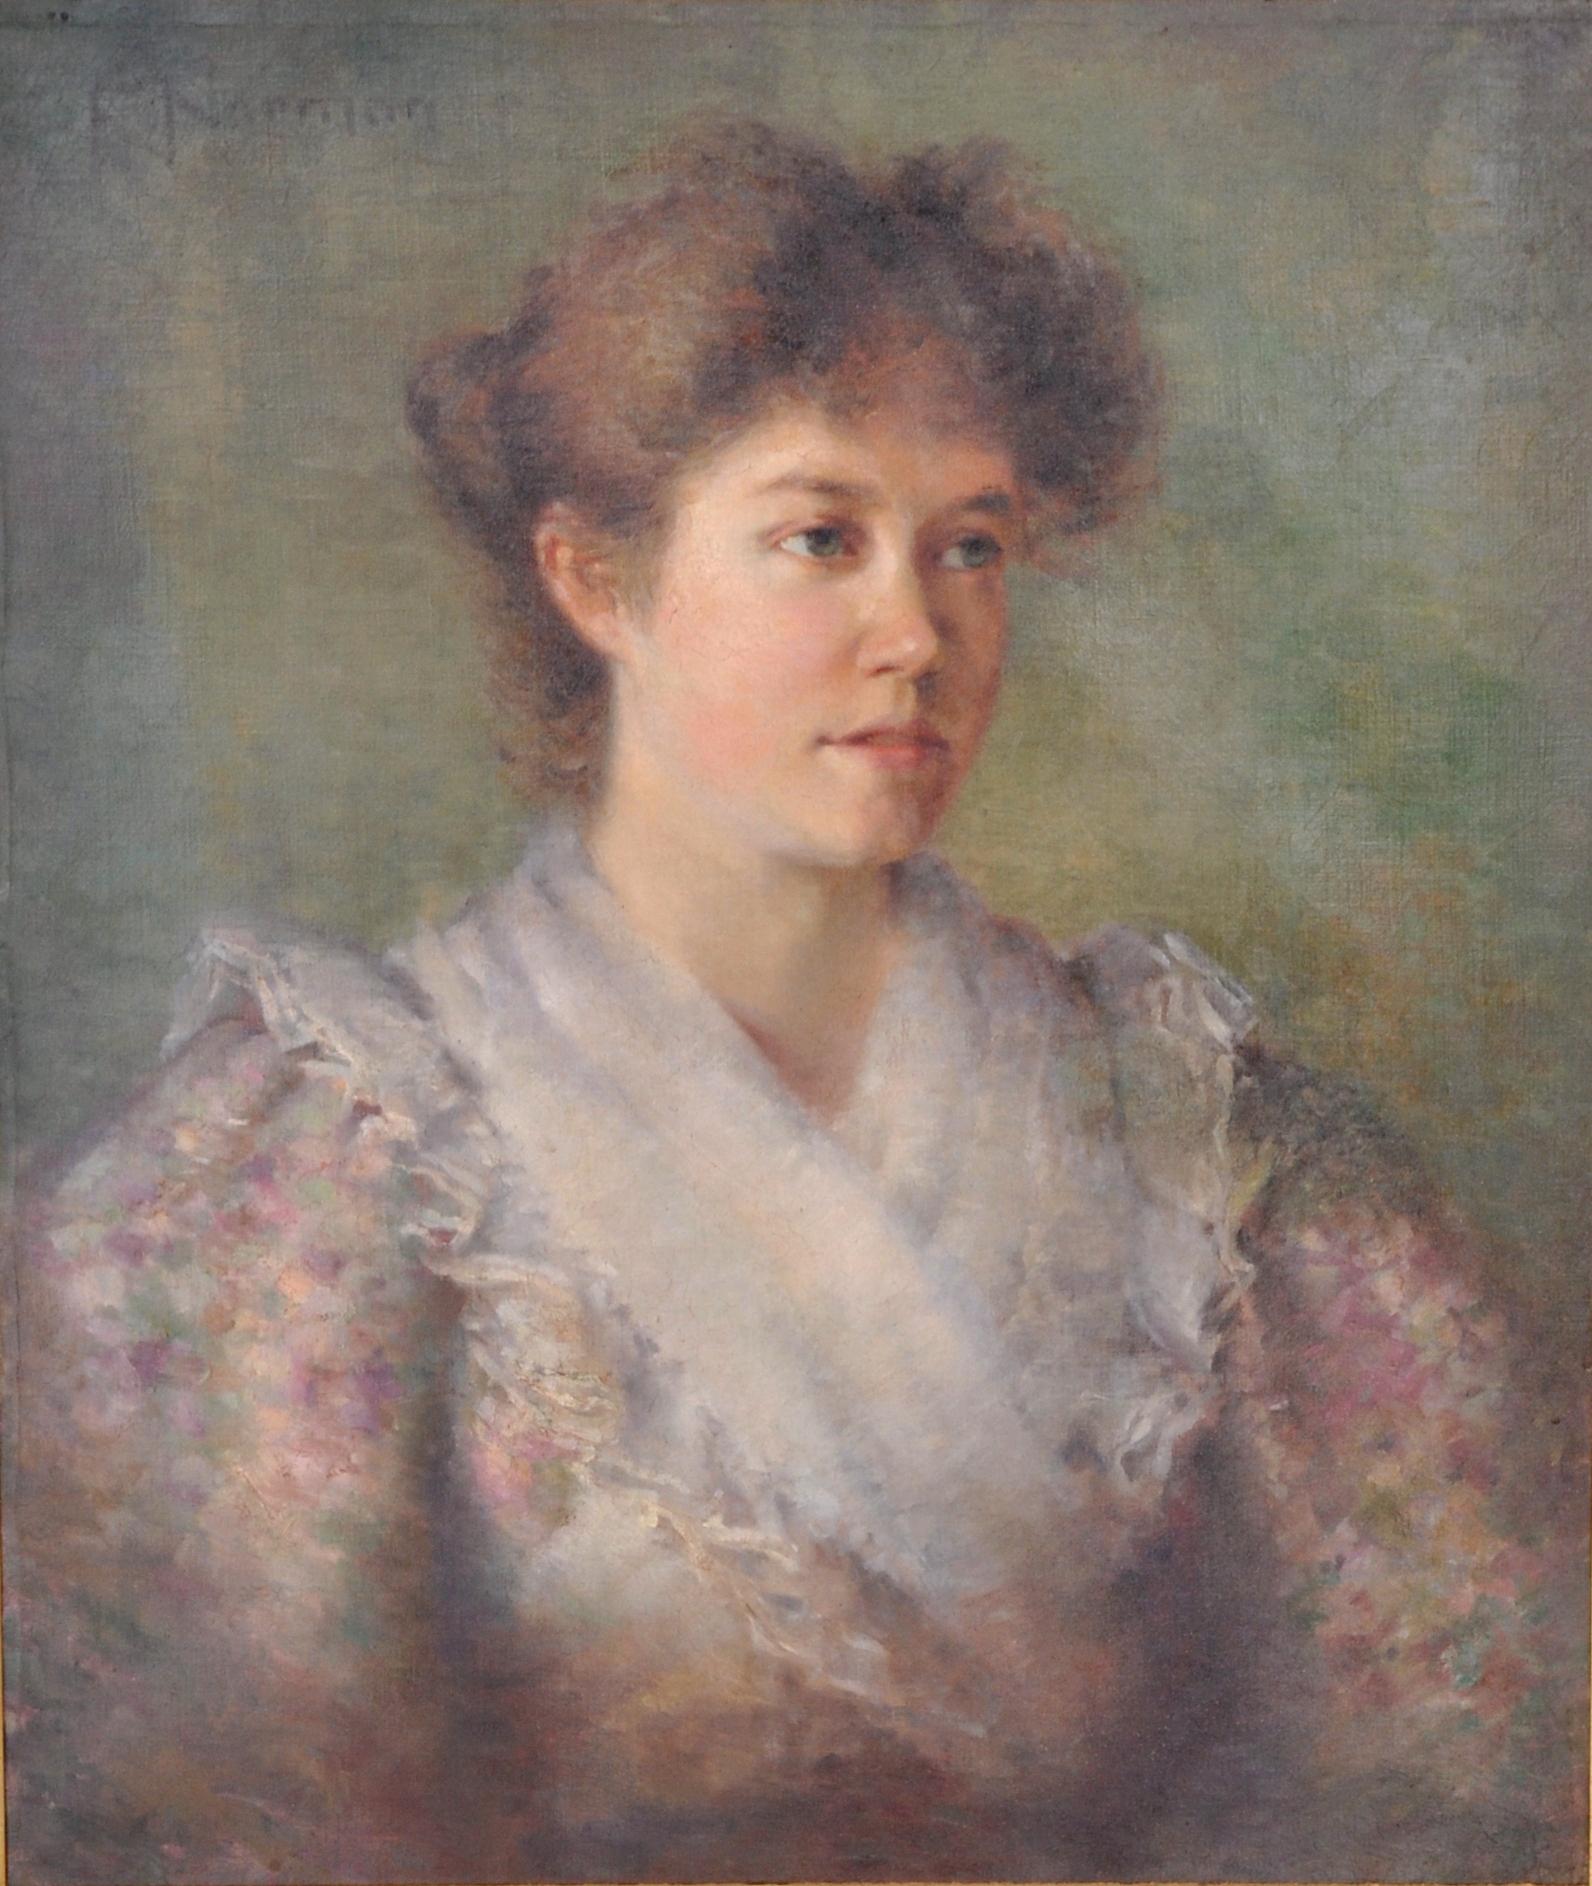 Peinture impressionniste américaine ancienne de la fin du 19e siècle représentant un portrait de femme, vers 1890. Très beau portrait impressionniste d'une jeune femme en tenue de la fin du XIXe siècle. Huile sur toile, signée en haut à gauche 